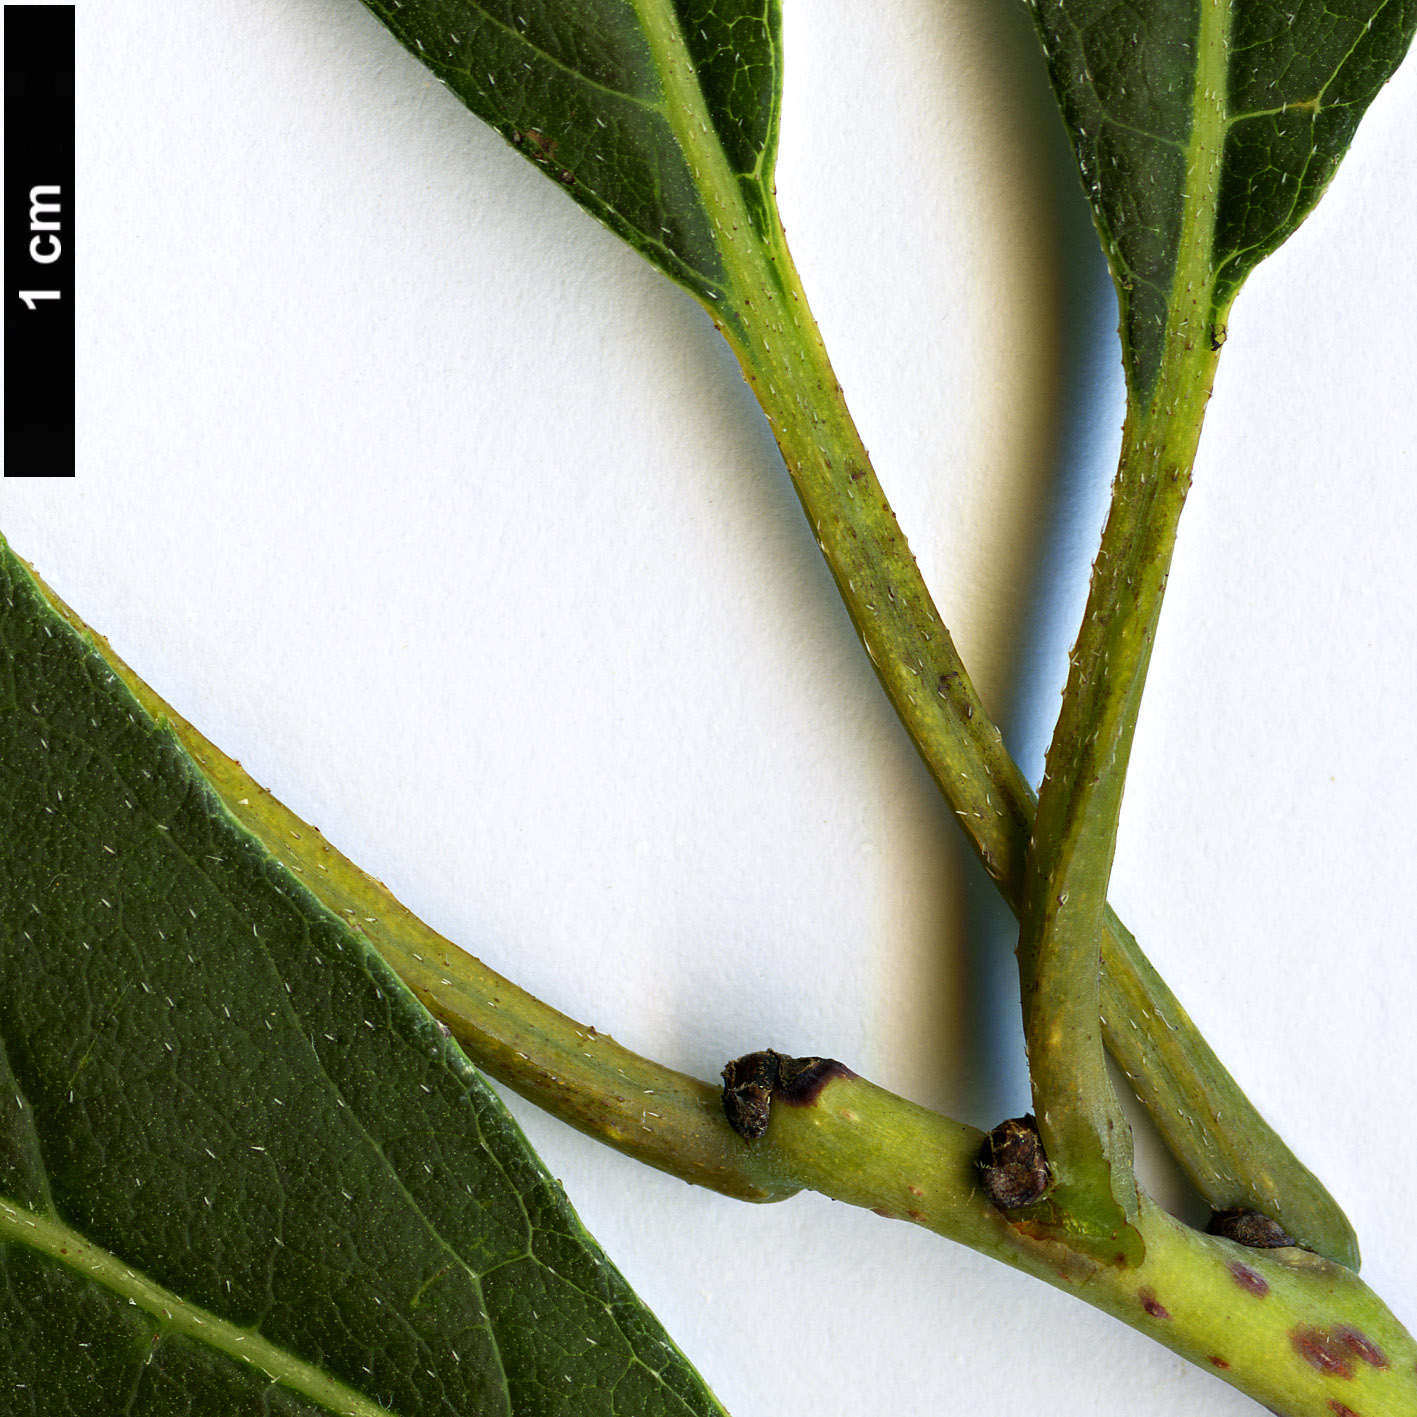 High resolution image: Family: Boraginaceae - Genus: Ehretia - Taxon: acuminata